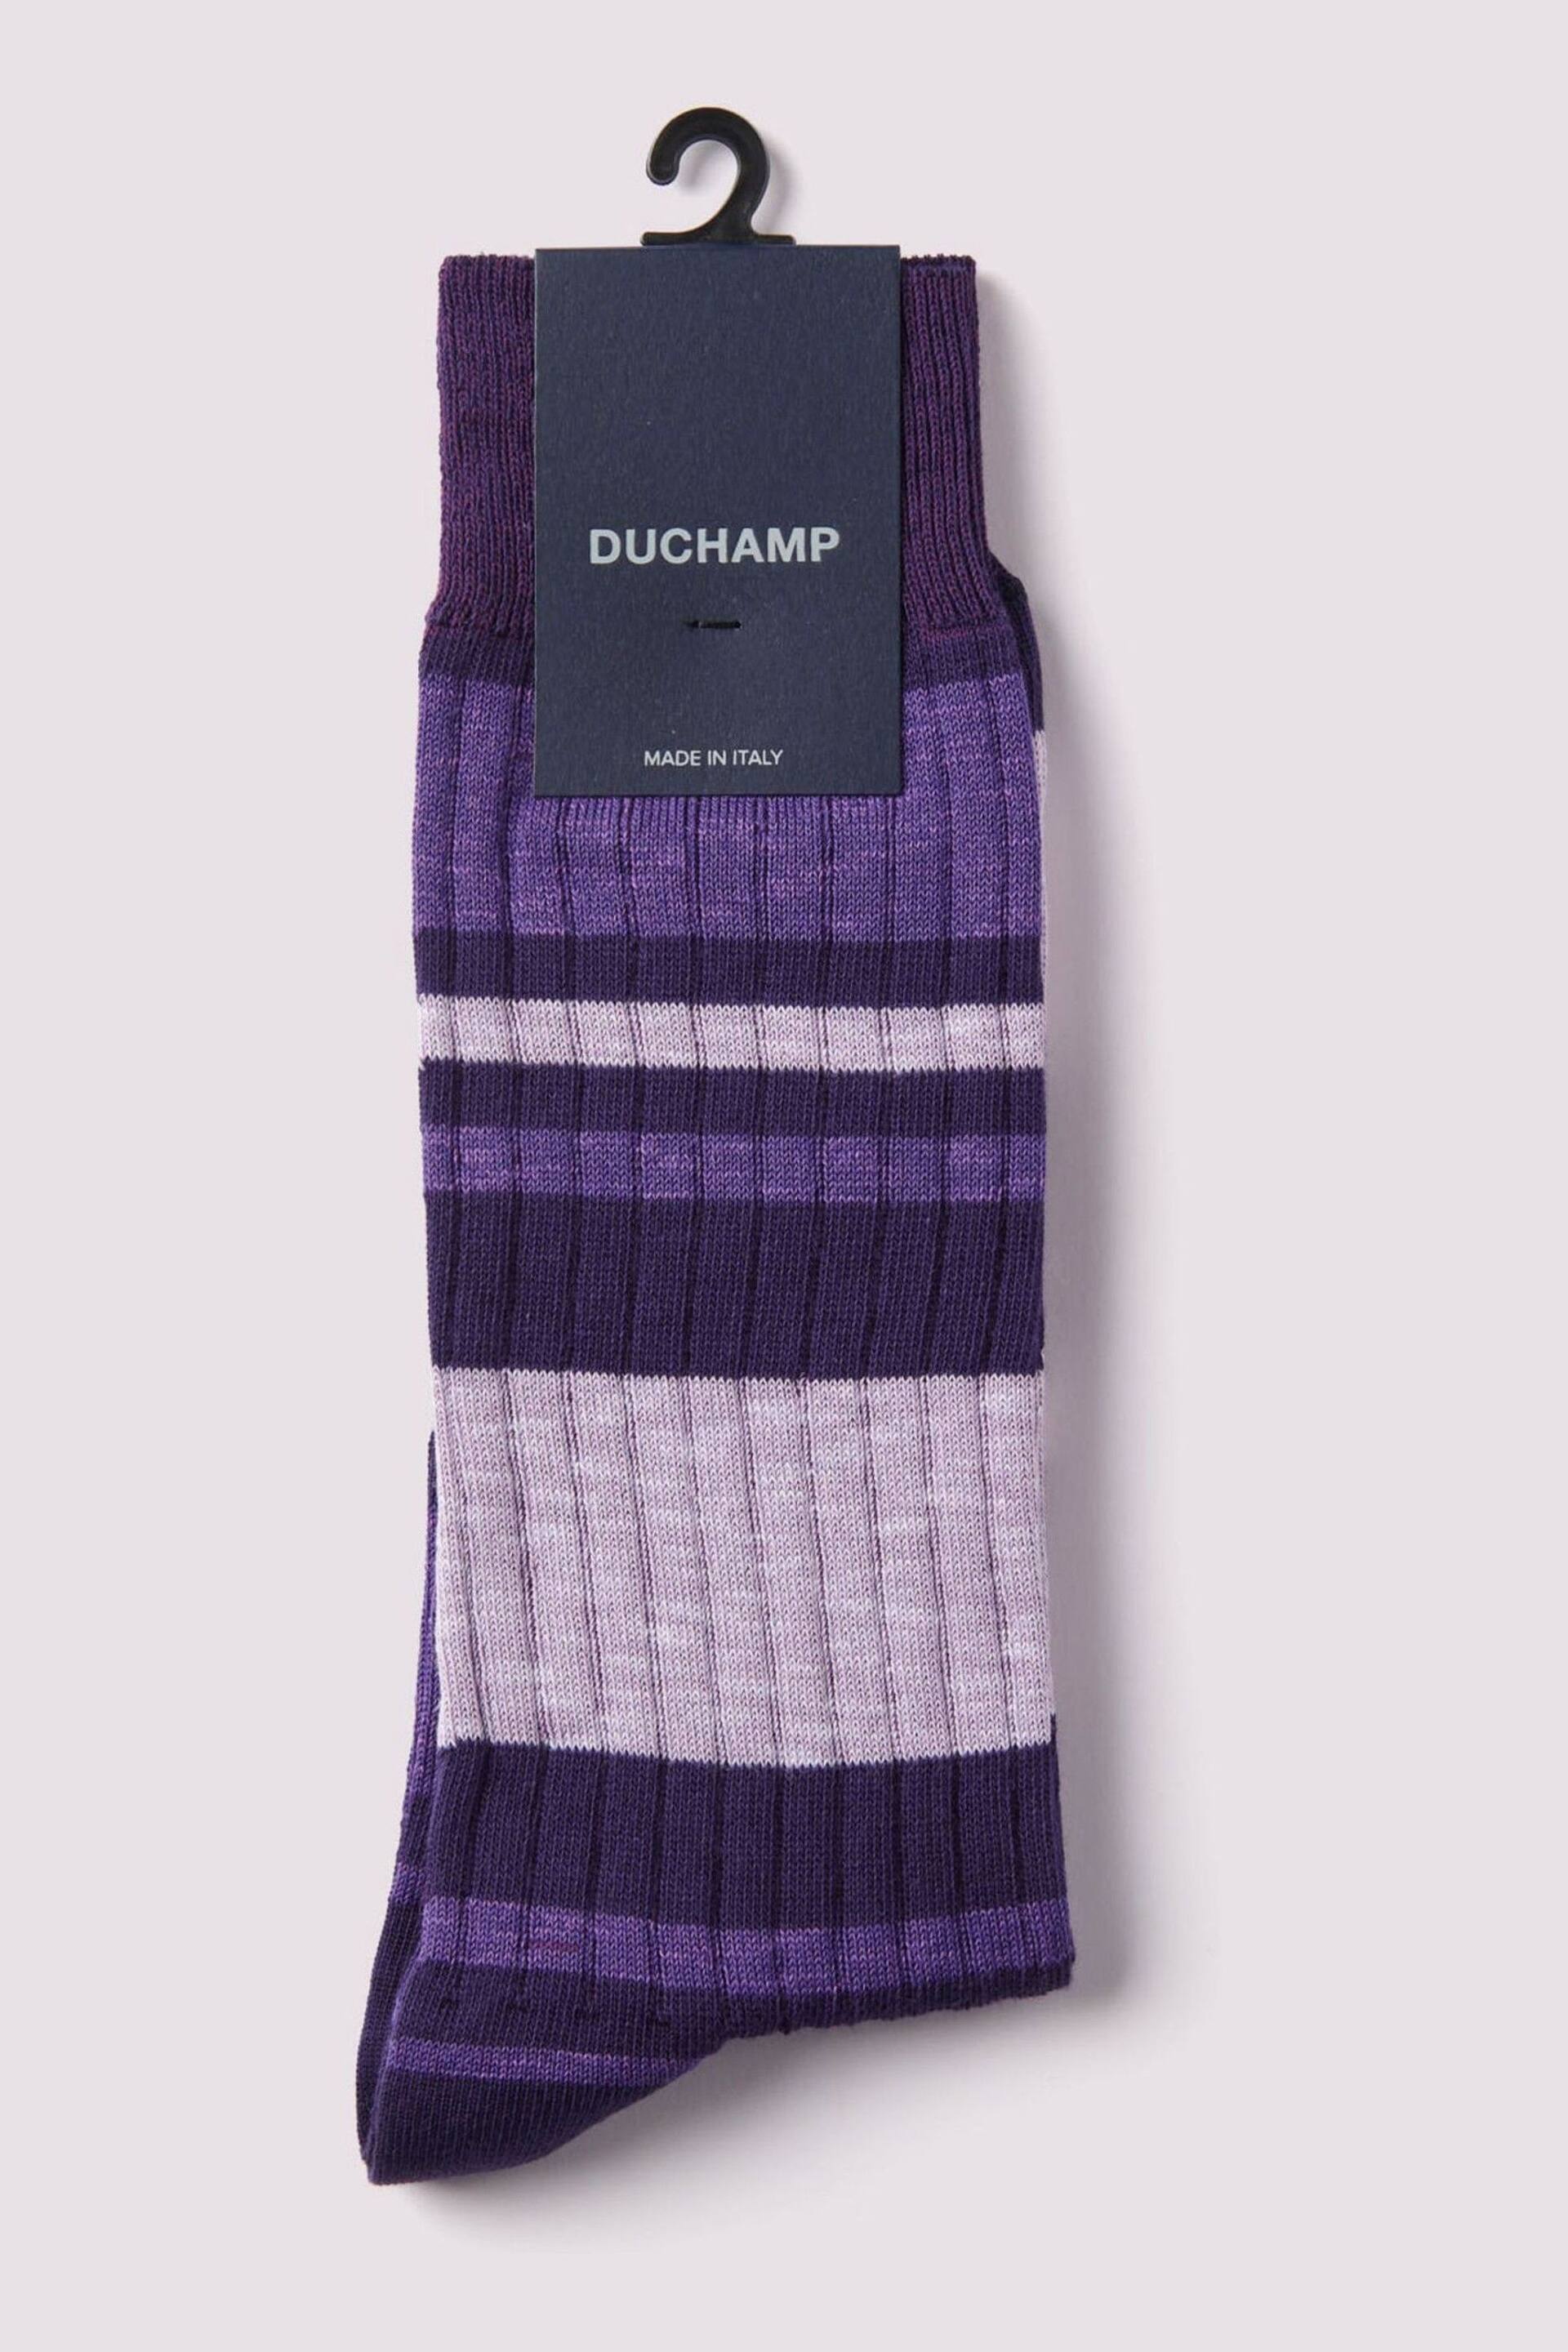 Duchamp Mens Melange Stripe Socks - Image 2 of 3